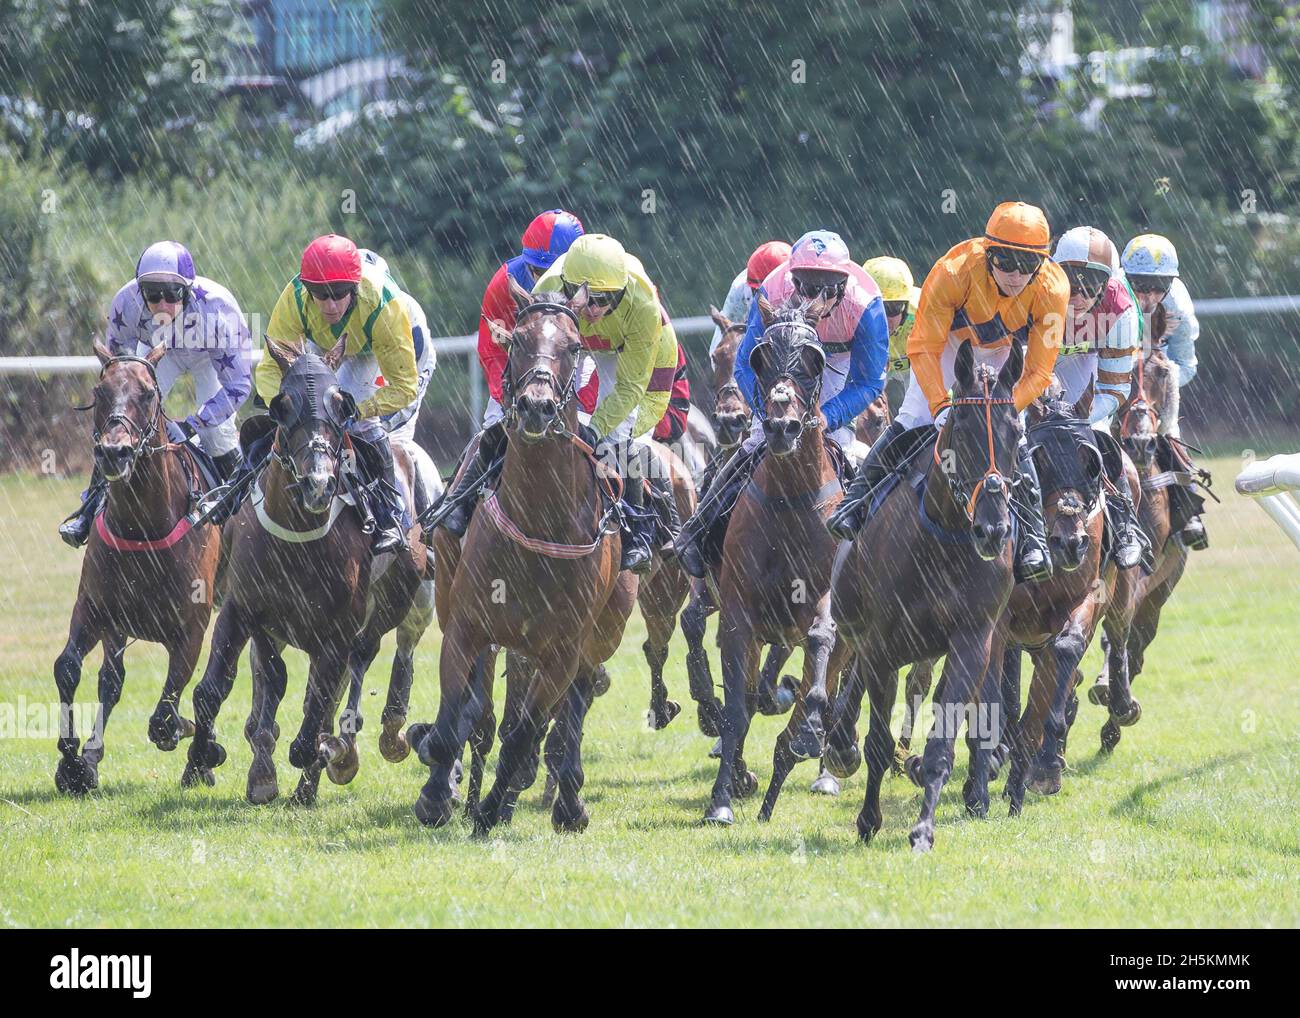 Rennpferde in Aktion, die von Jockeys geritten werden, zusammen zusammengepfercht, Rennen auf der Rennbahn Worcester Racecourse im Sommerregen, Großbritannien. Stockfoto